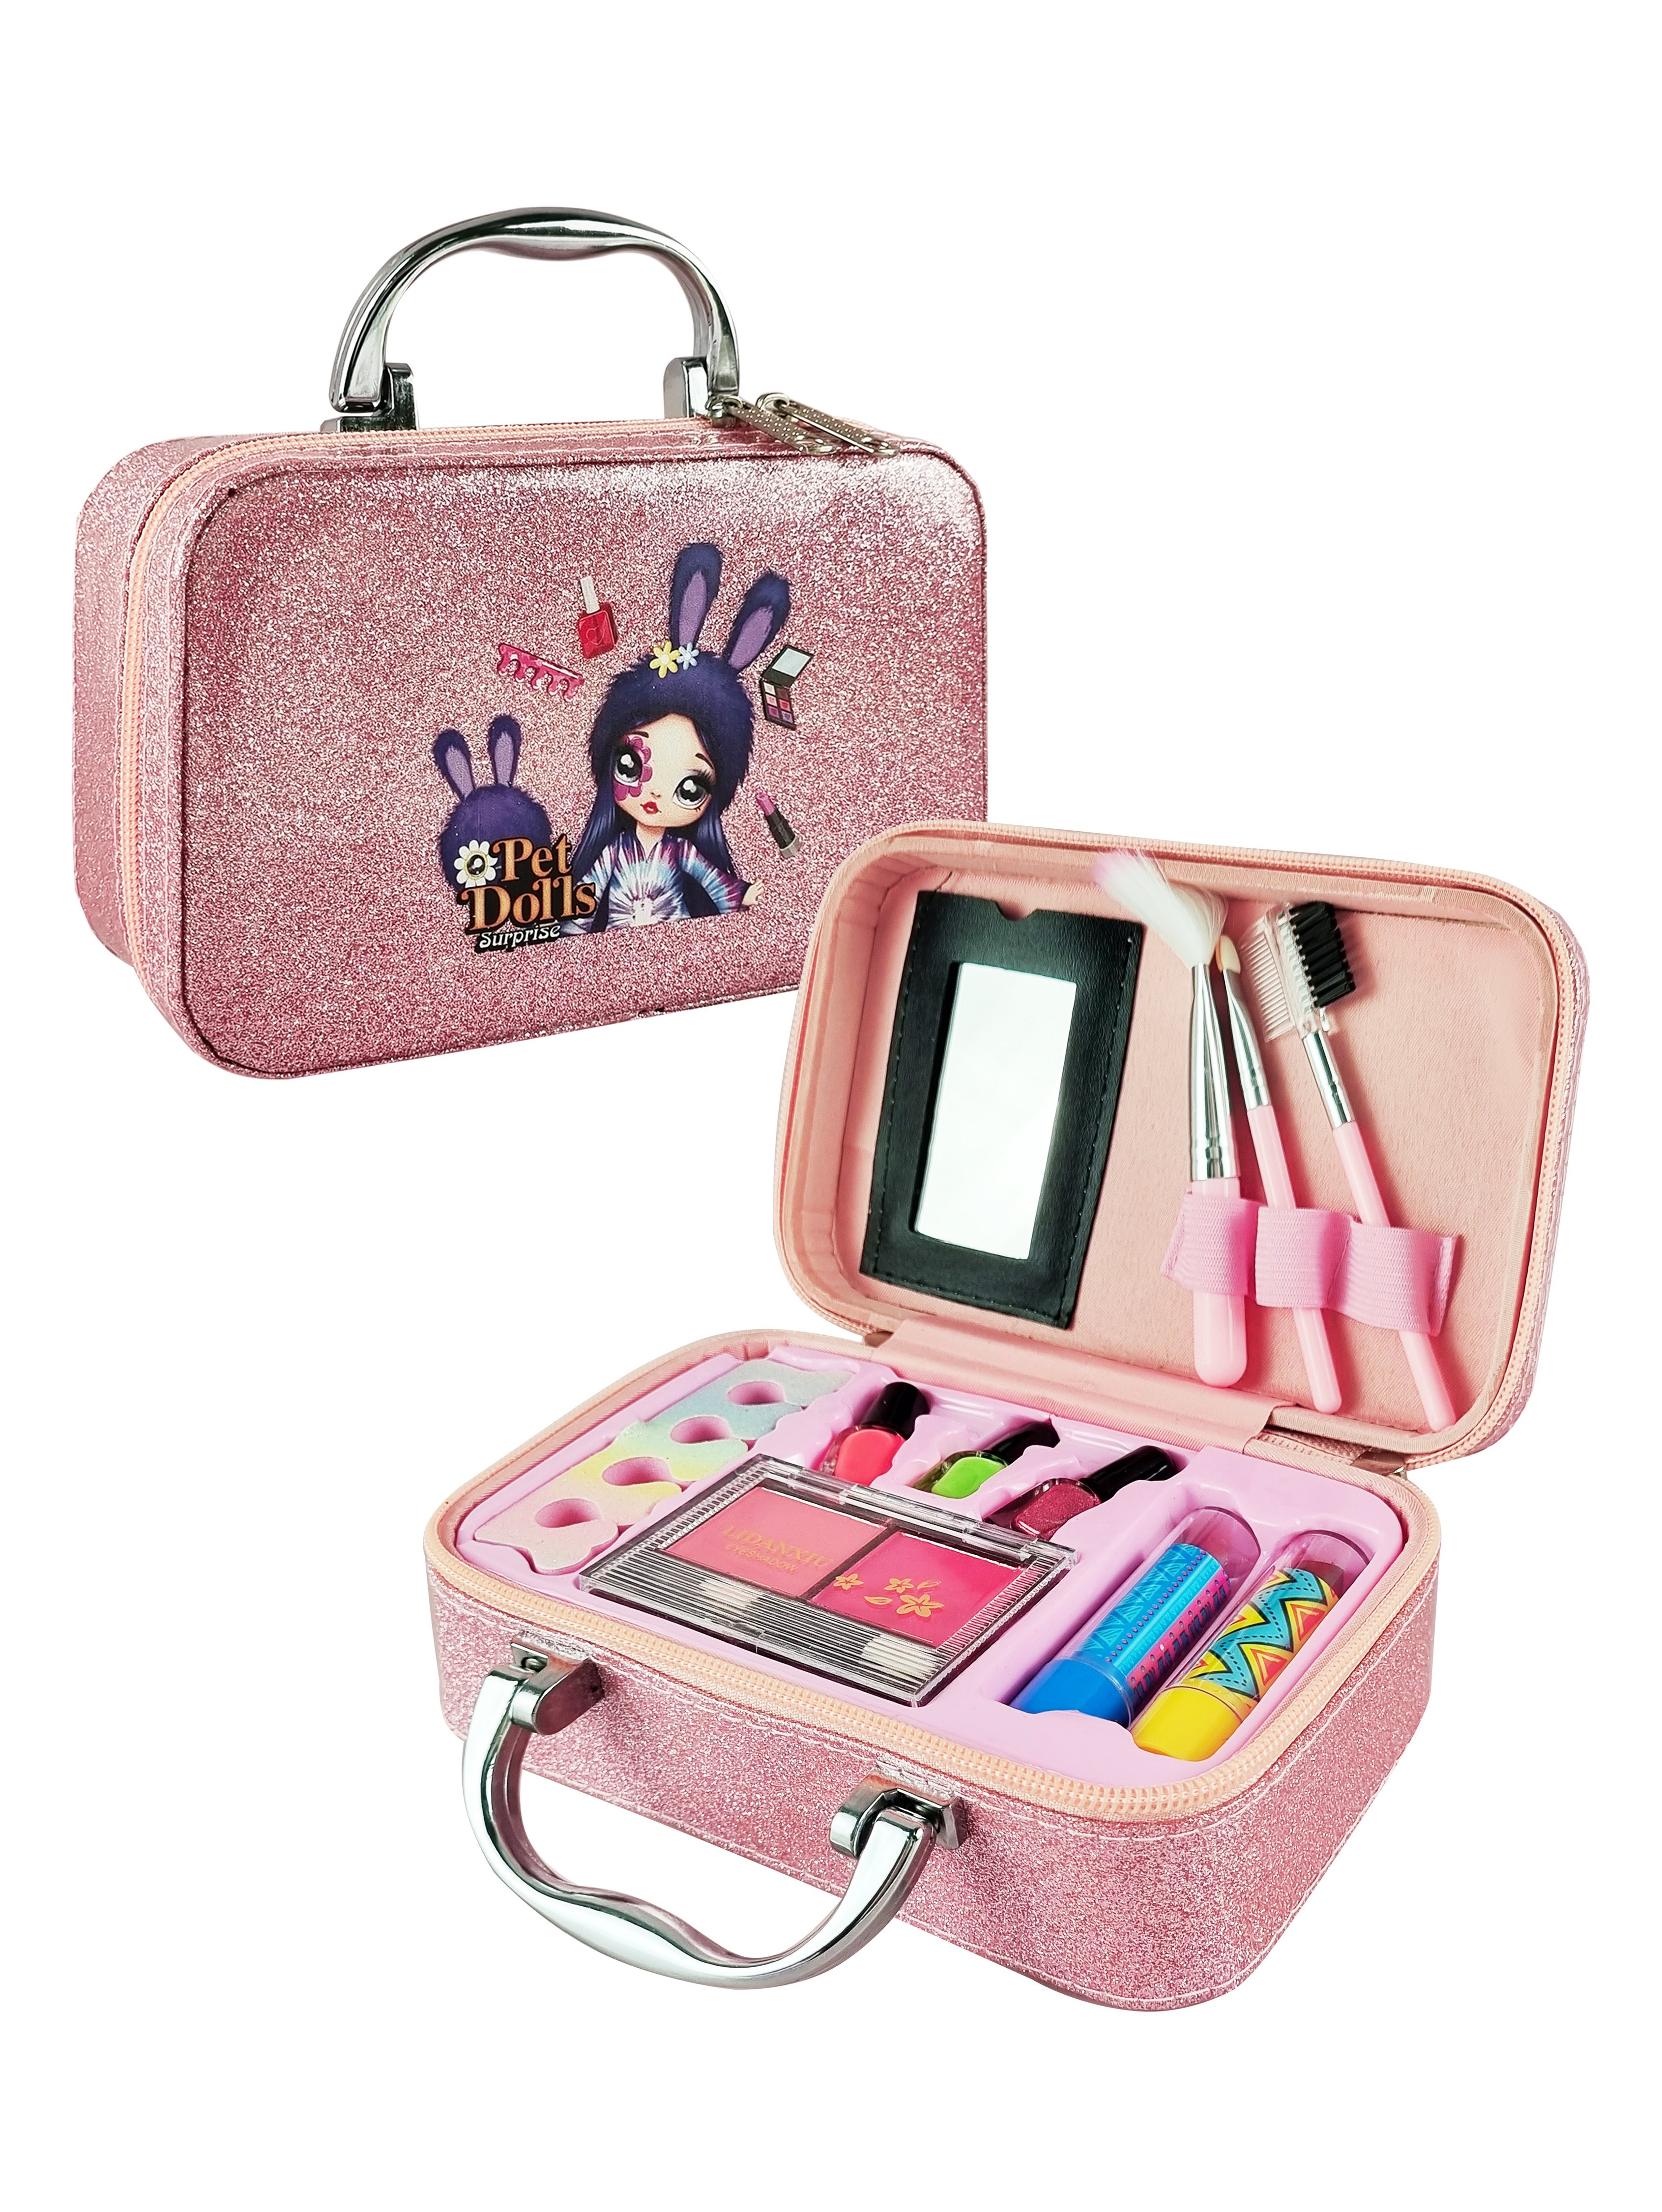 Детская декоративная косметика PetDolls, 12 предметов, розовый чемоданчик 5-905-2 помада для губ lukky меняющая на розовый т11940 базовый фиолетовый